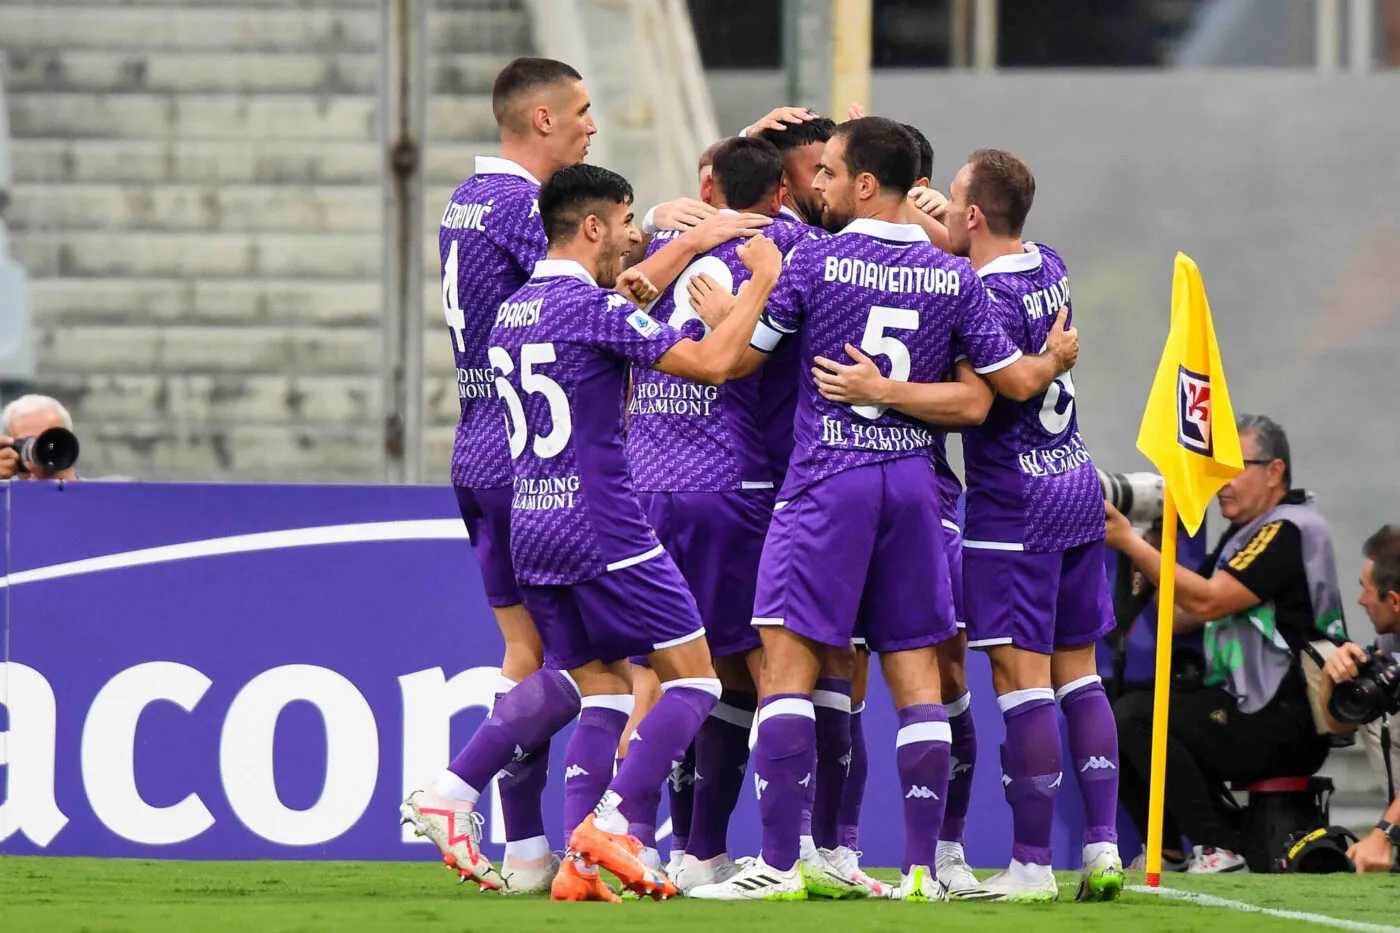 Pronostic Fiorentina Empoli : Analyse, cotes et prono du match de Serie A -  Paris sportifs - SO FOOT.com